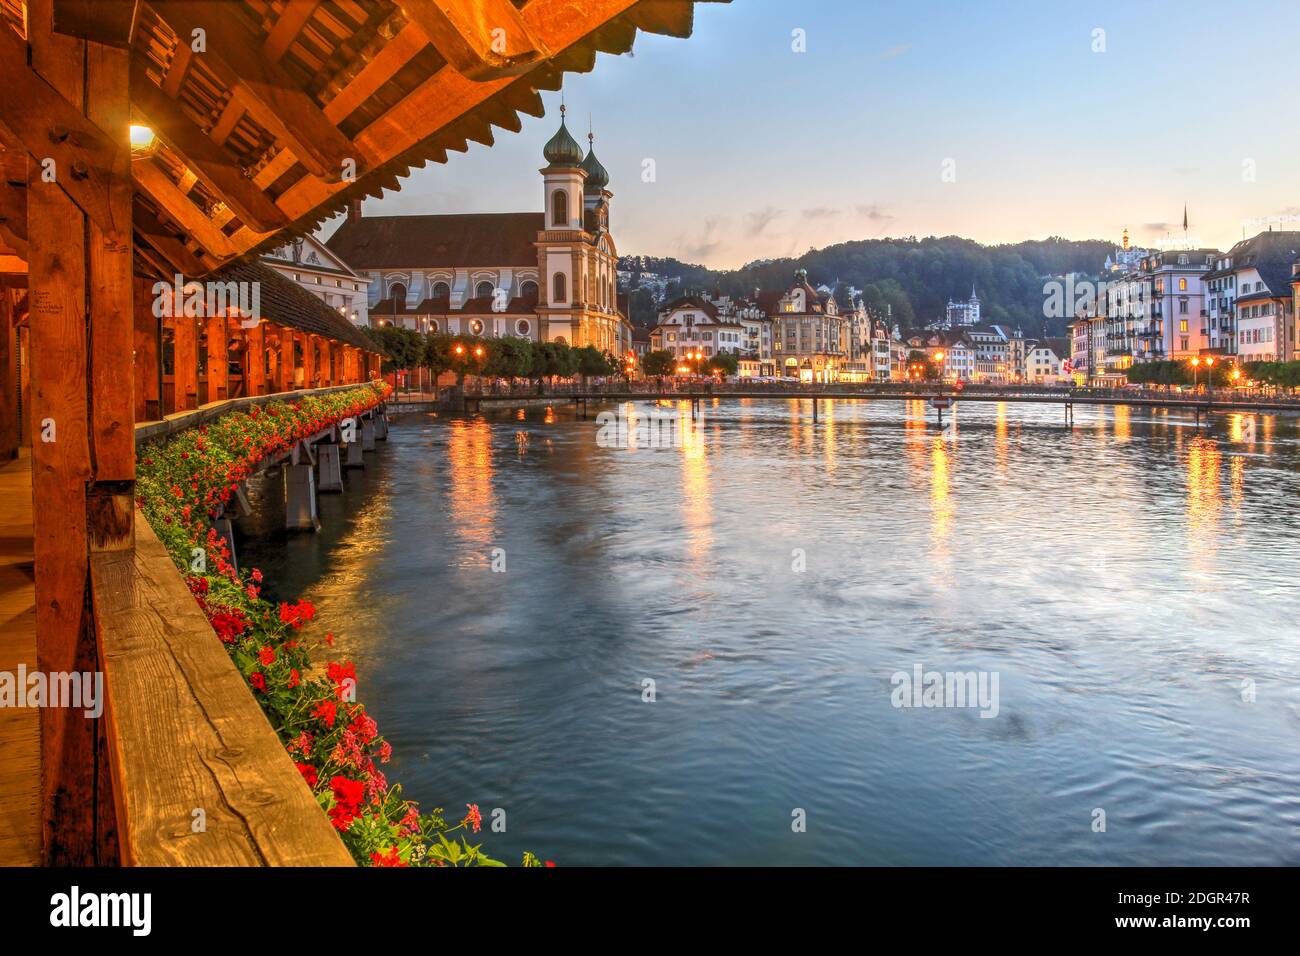 Escena nocturna desde el pintoresco Puente de la Capilla sobre el río Reuss con la Iglesia Jesuita de Lucerna y la orilla del río, Lucerna, Suiza. Foto de stock